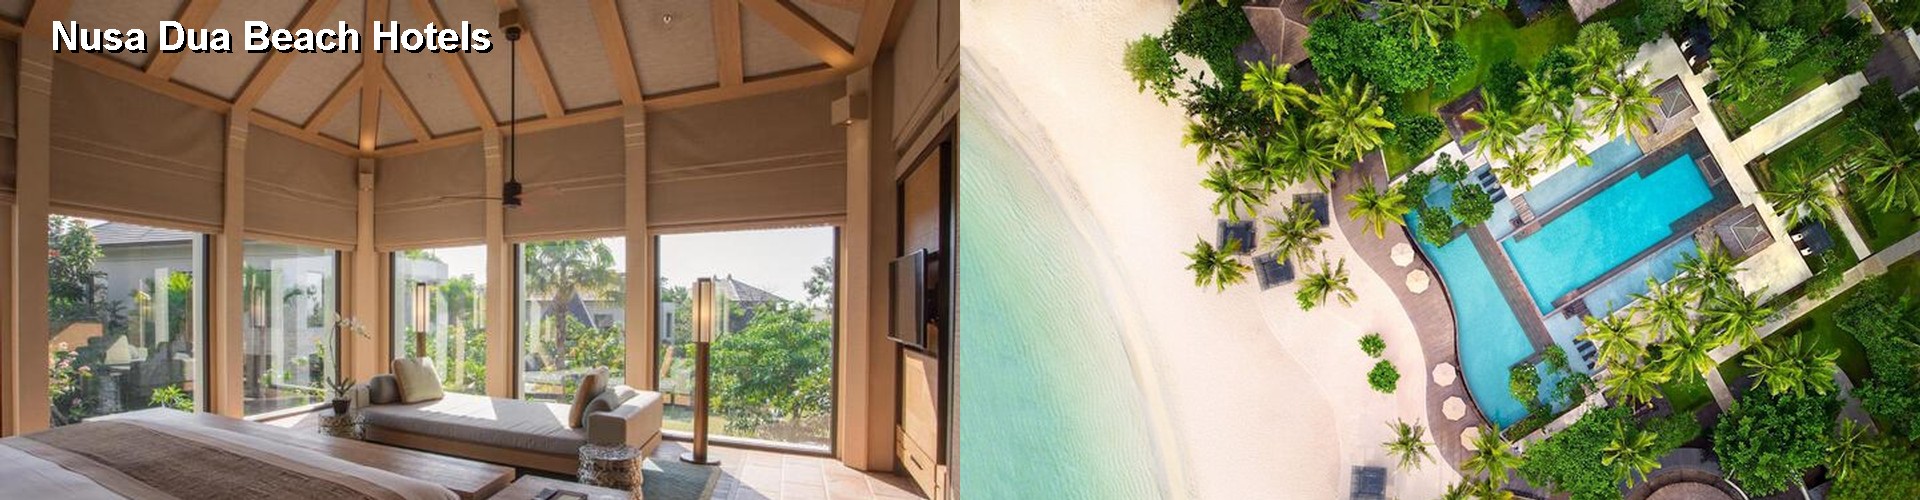 5 Best Hotels near Nusa Dua Beach